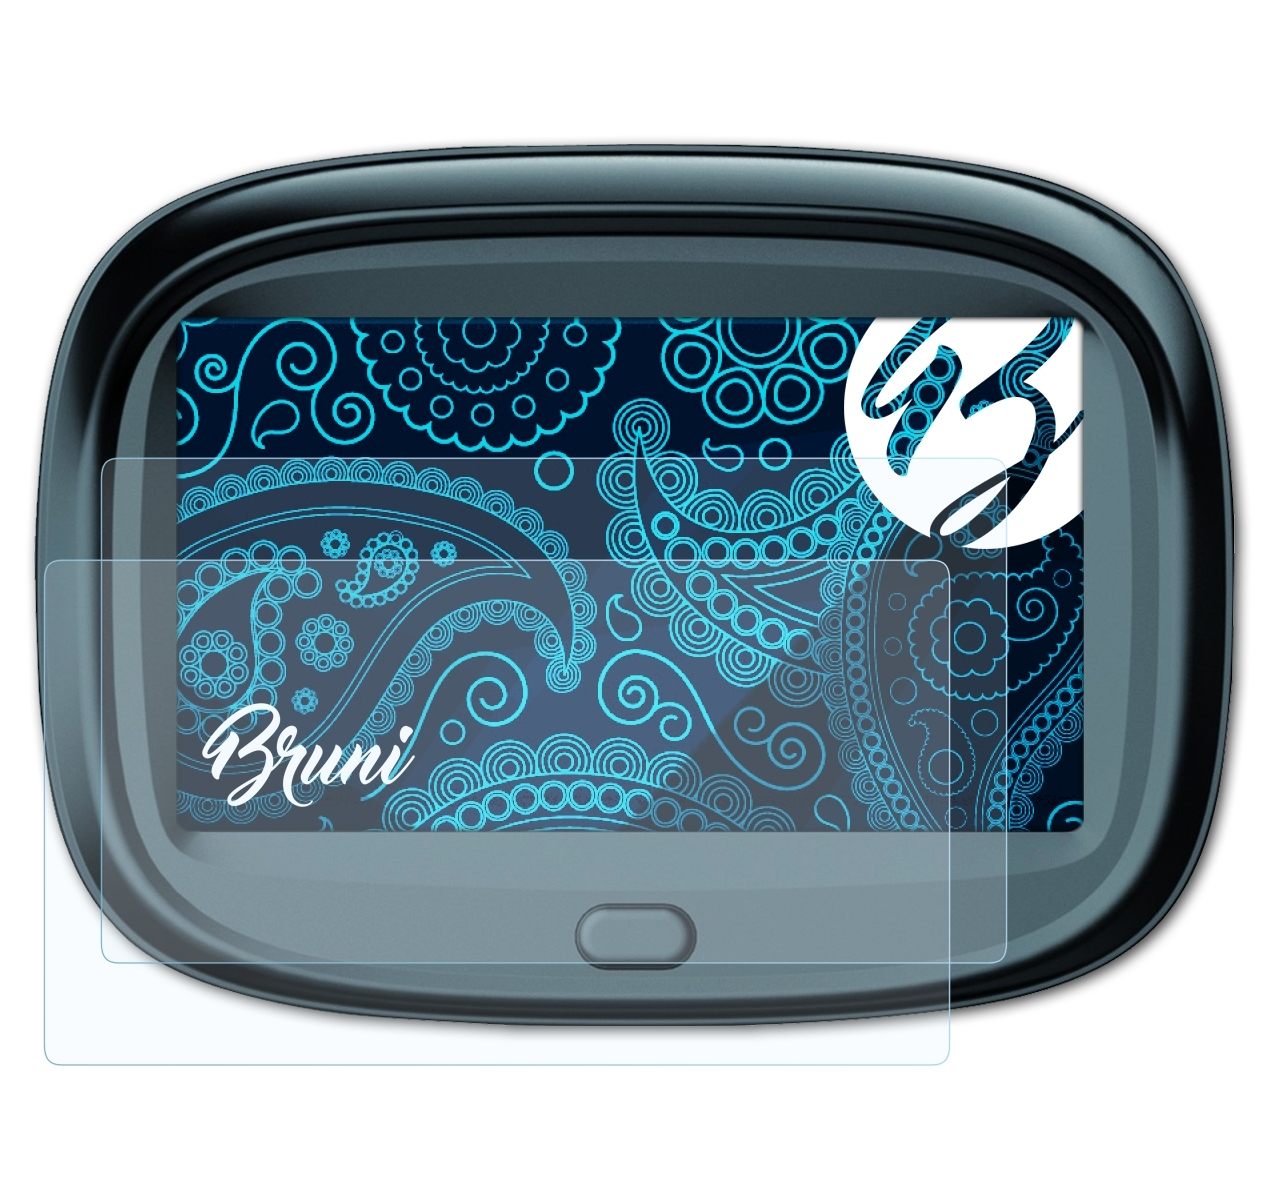 2x Blaupunkt Basics-Clear 43 BRUNI MotoPilot Schutzfolie(für EU)